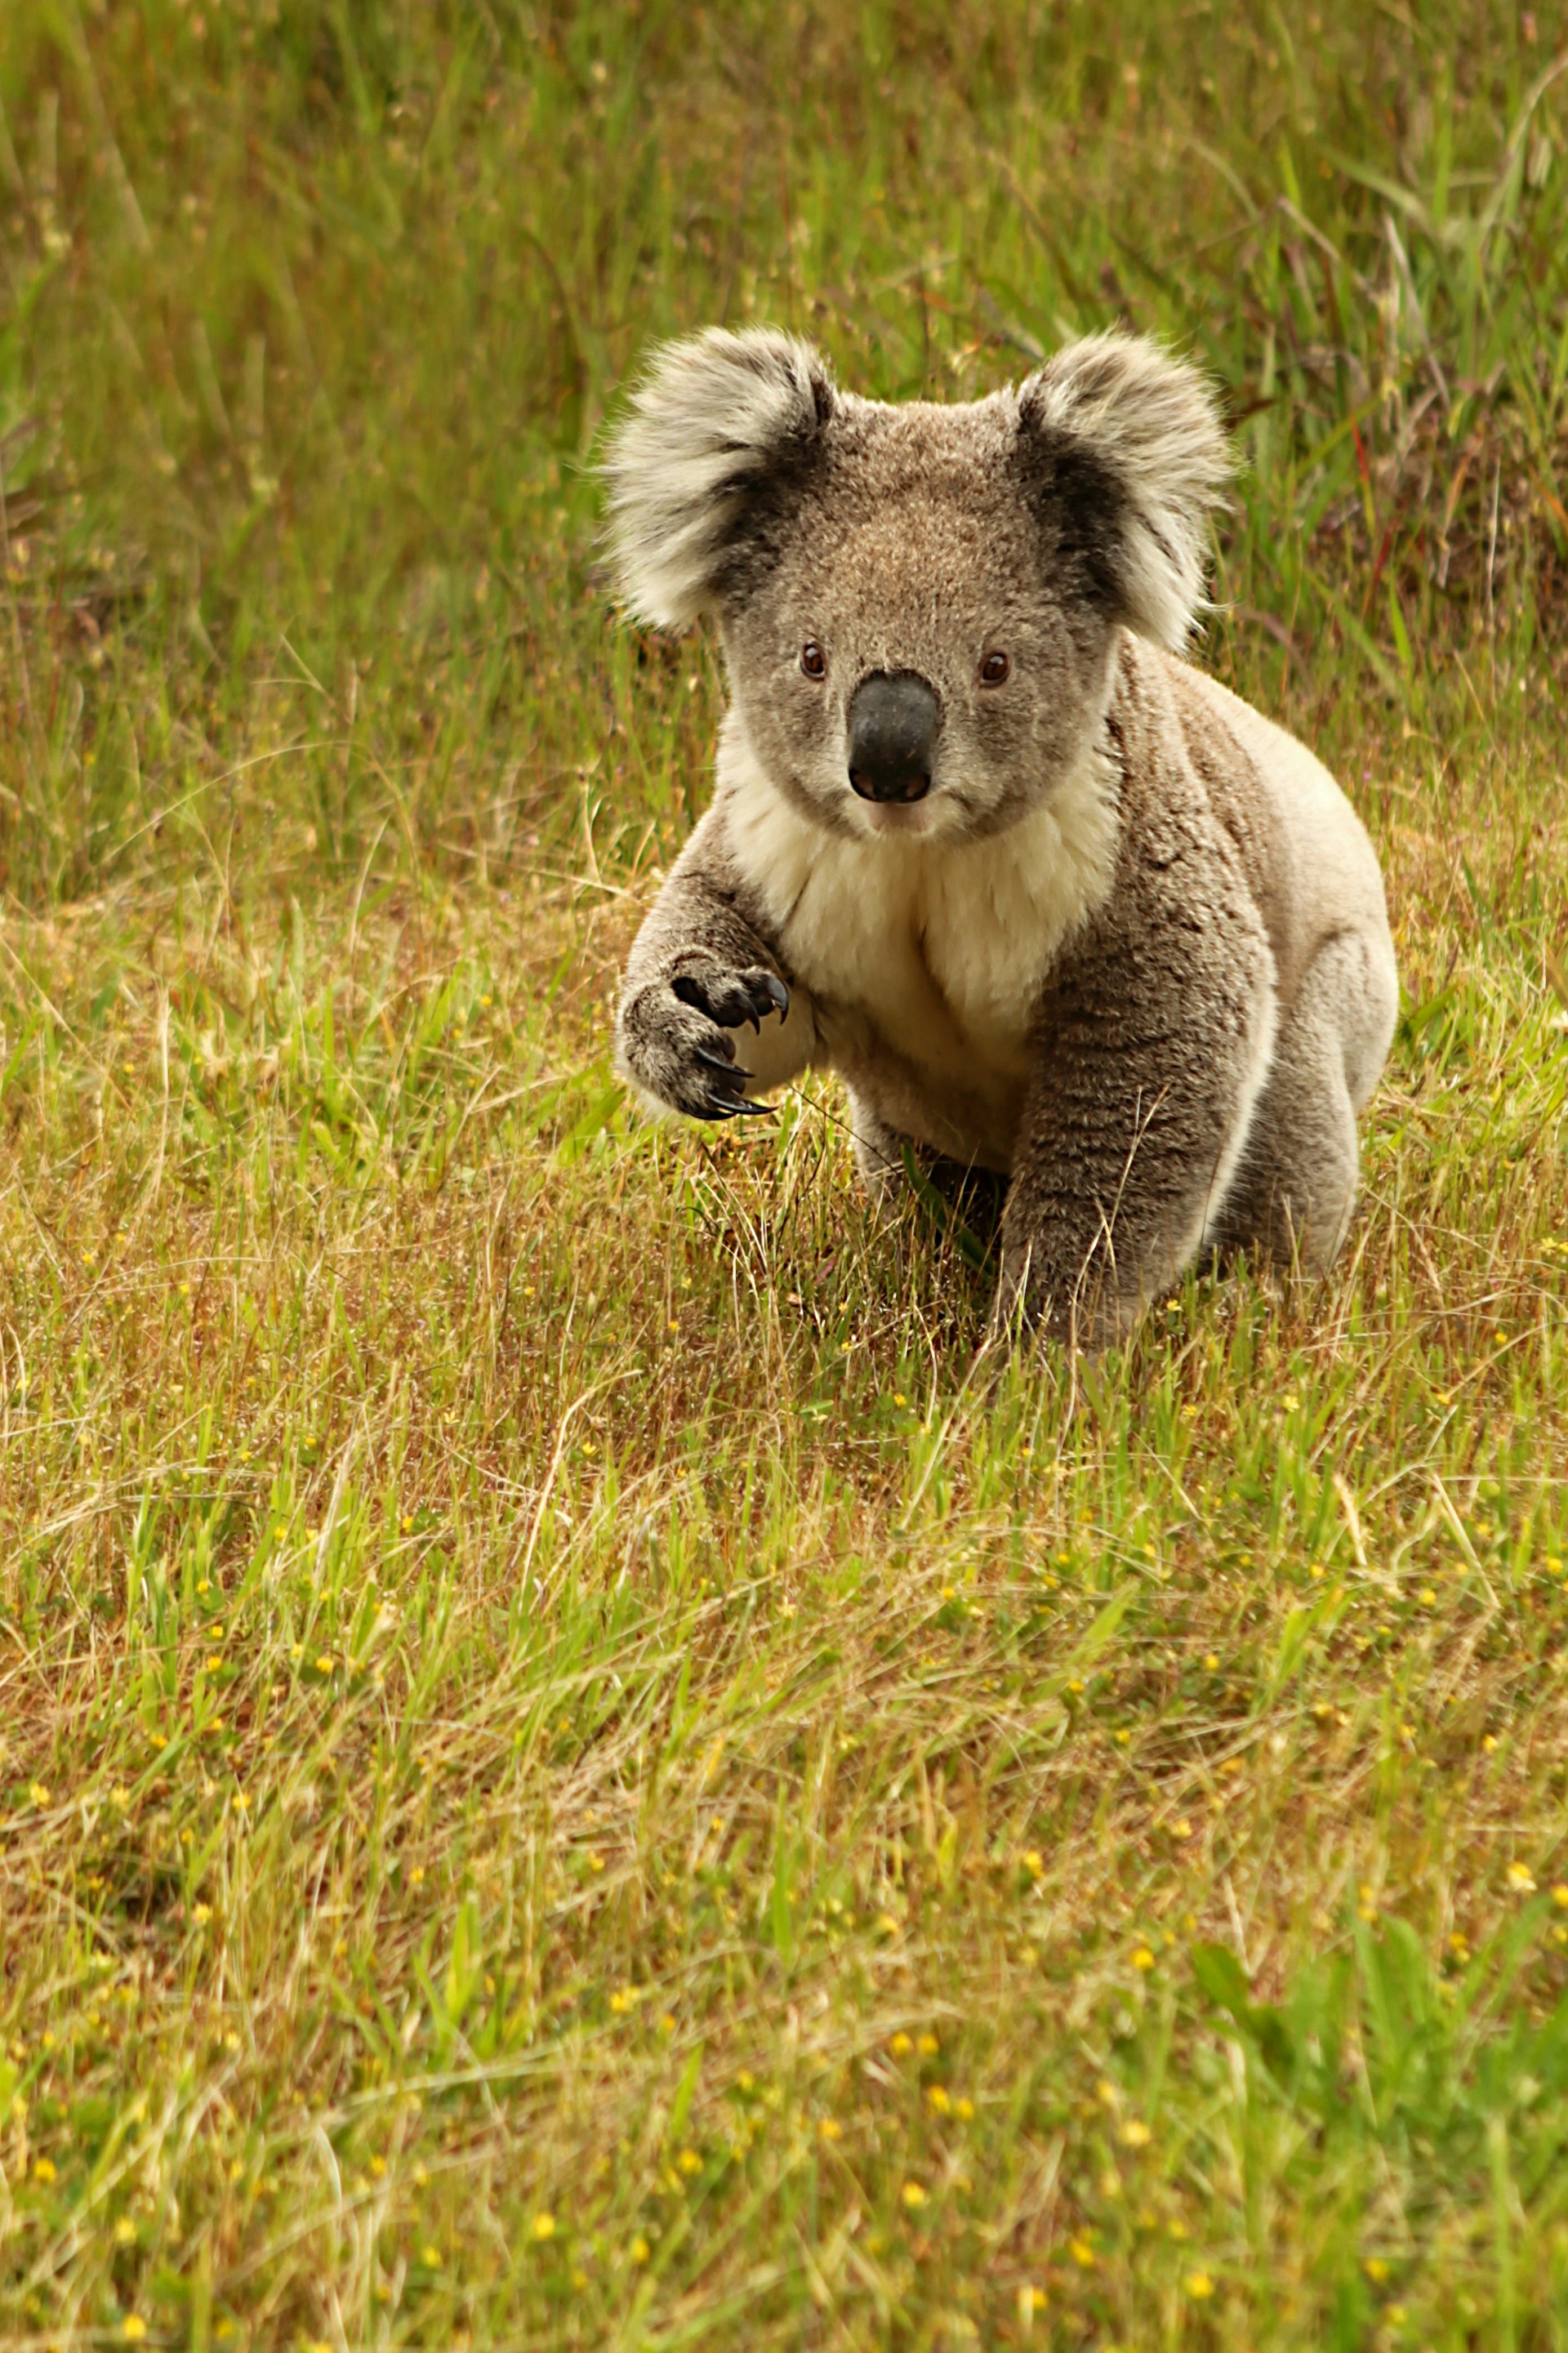 Koala on The Grass in Great Otway NP in Australia